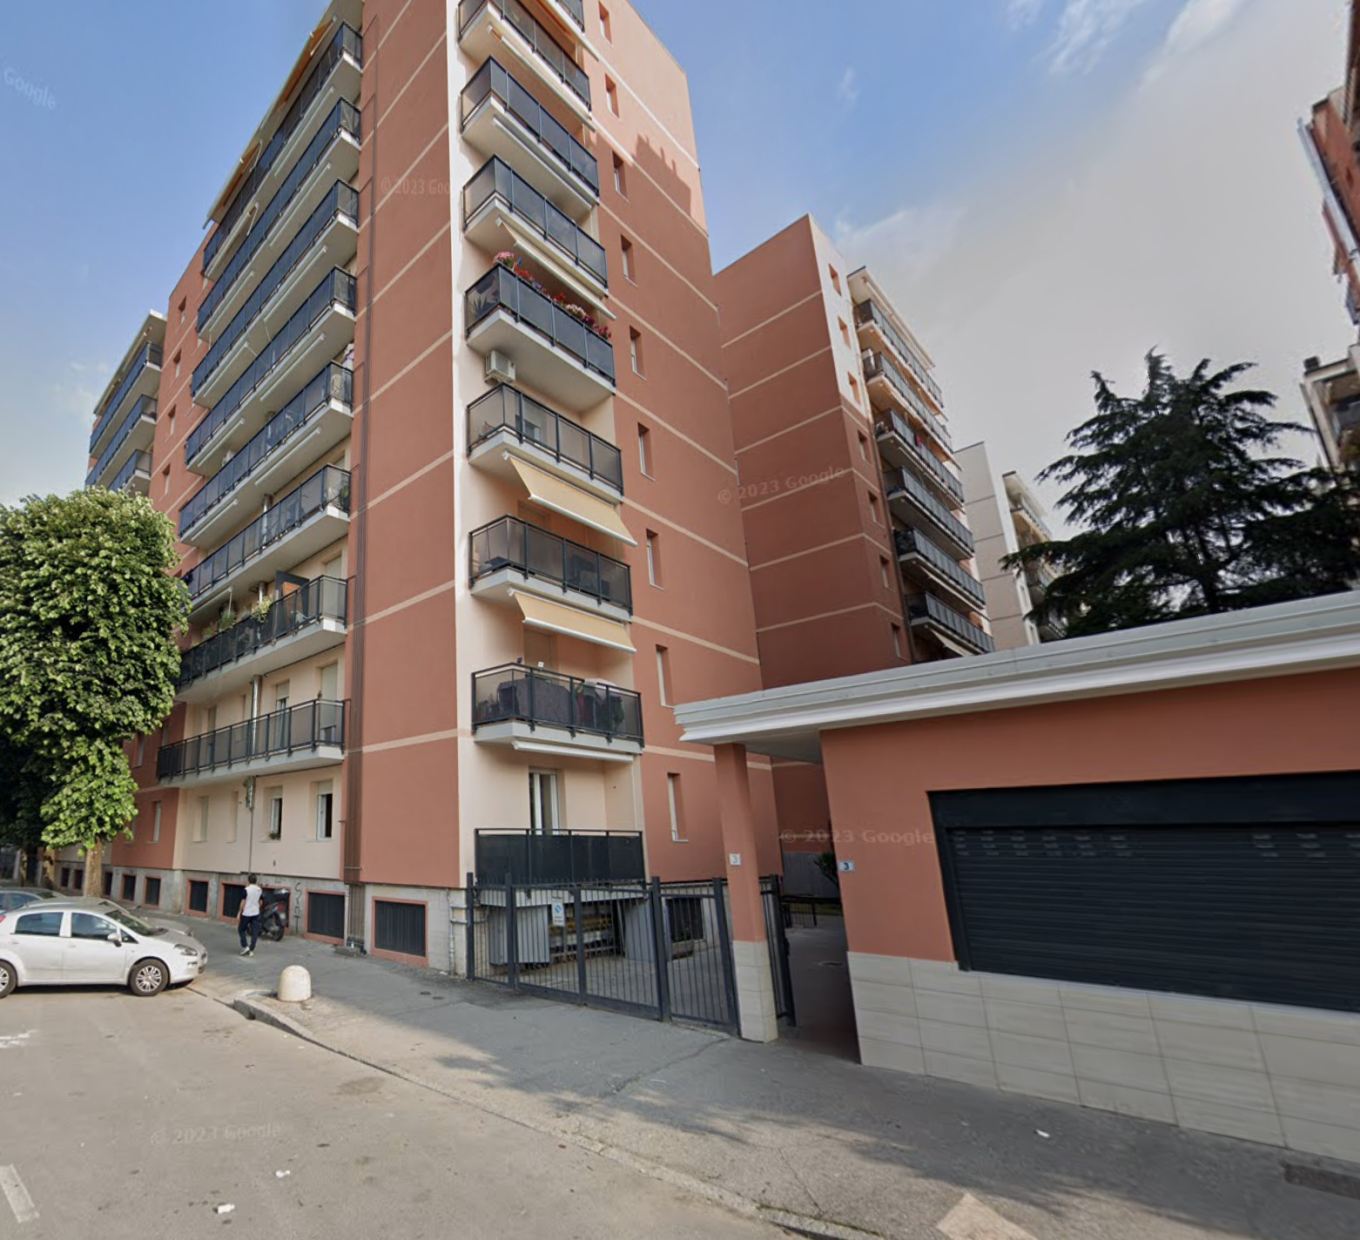 Appartamento in vendita a Pioltello, 3 locali, prezzo € 120.000 | PortaleAgenzieImmobiliari.it